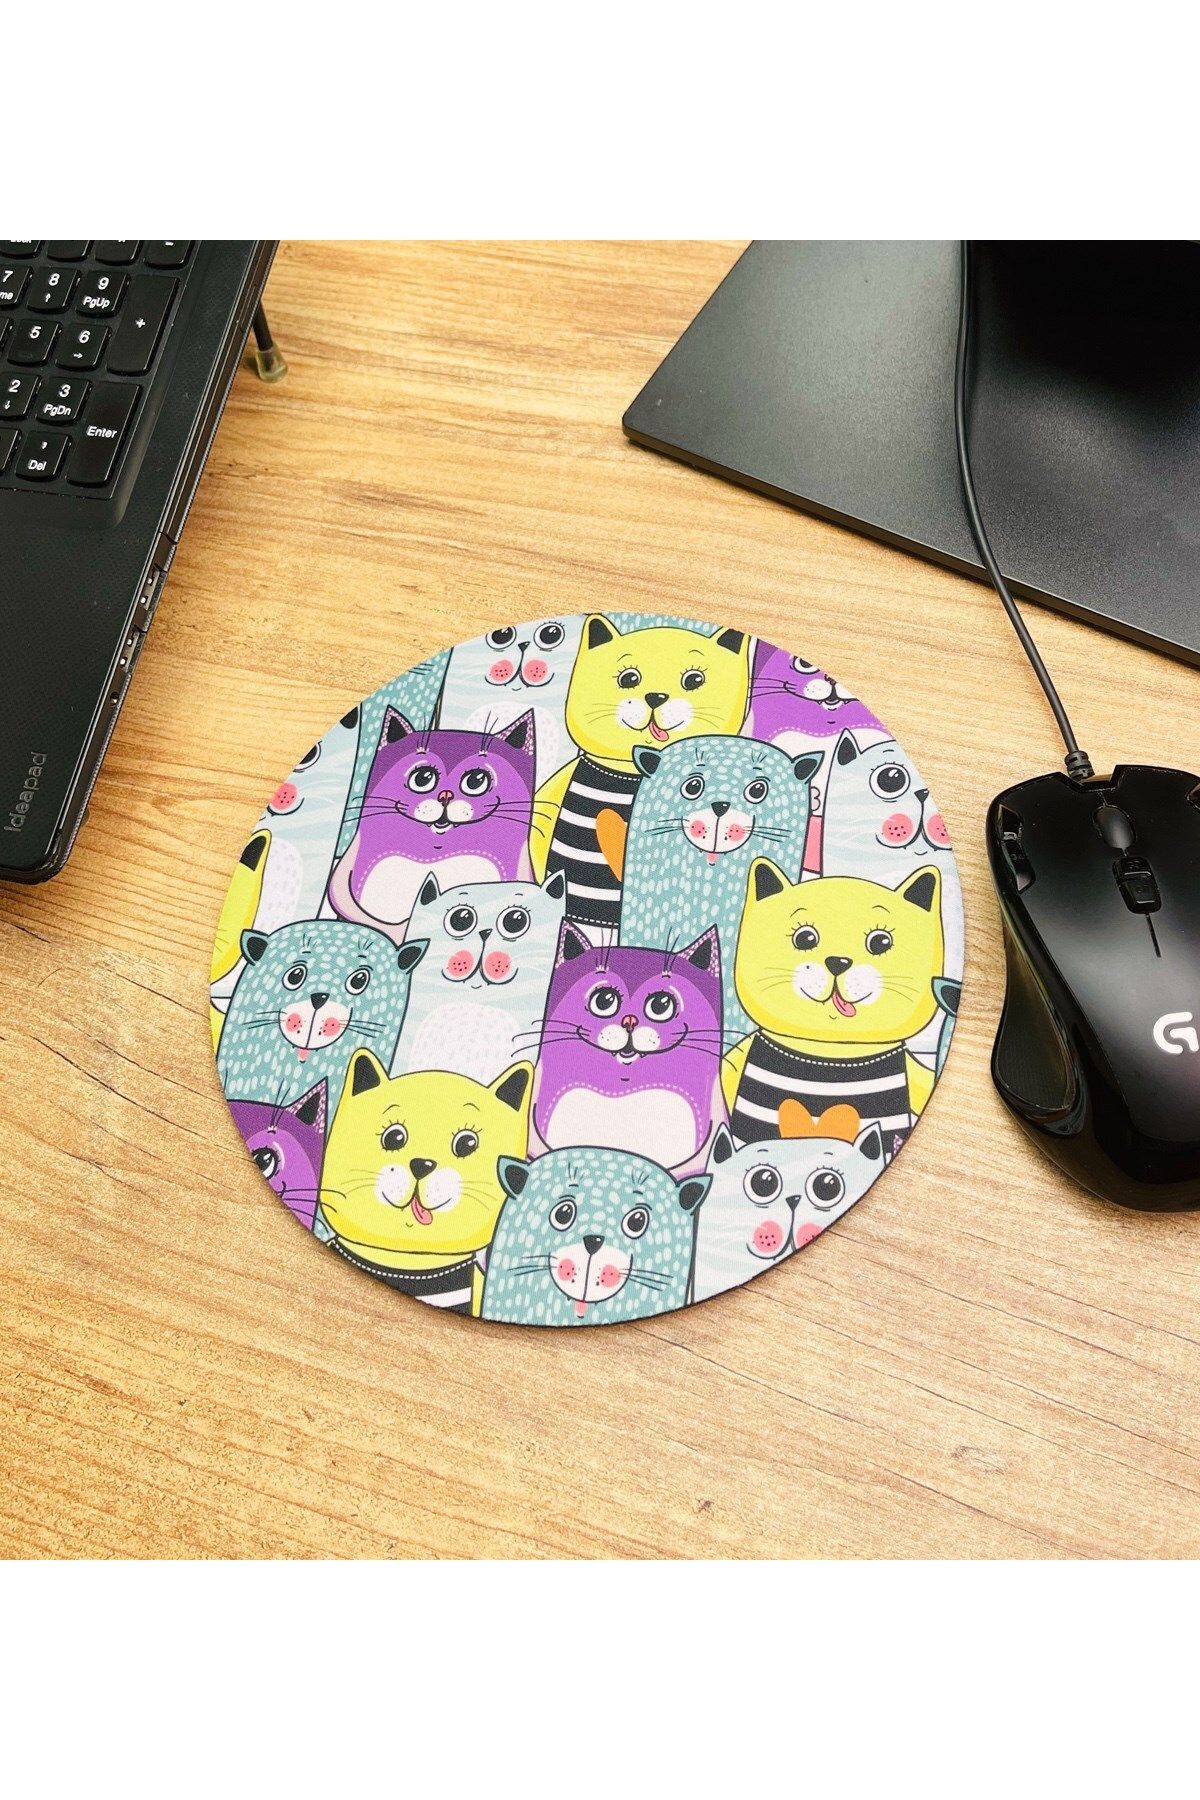 Gift Moda Sevimli Kedi Tasarımlı Oval Mouse Pad